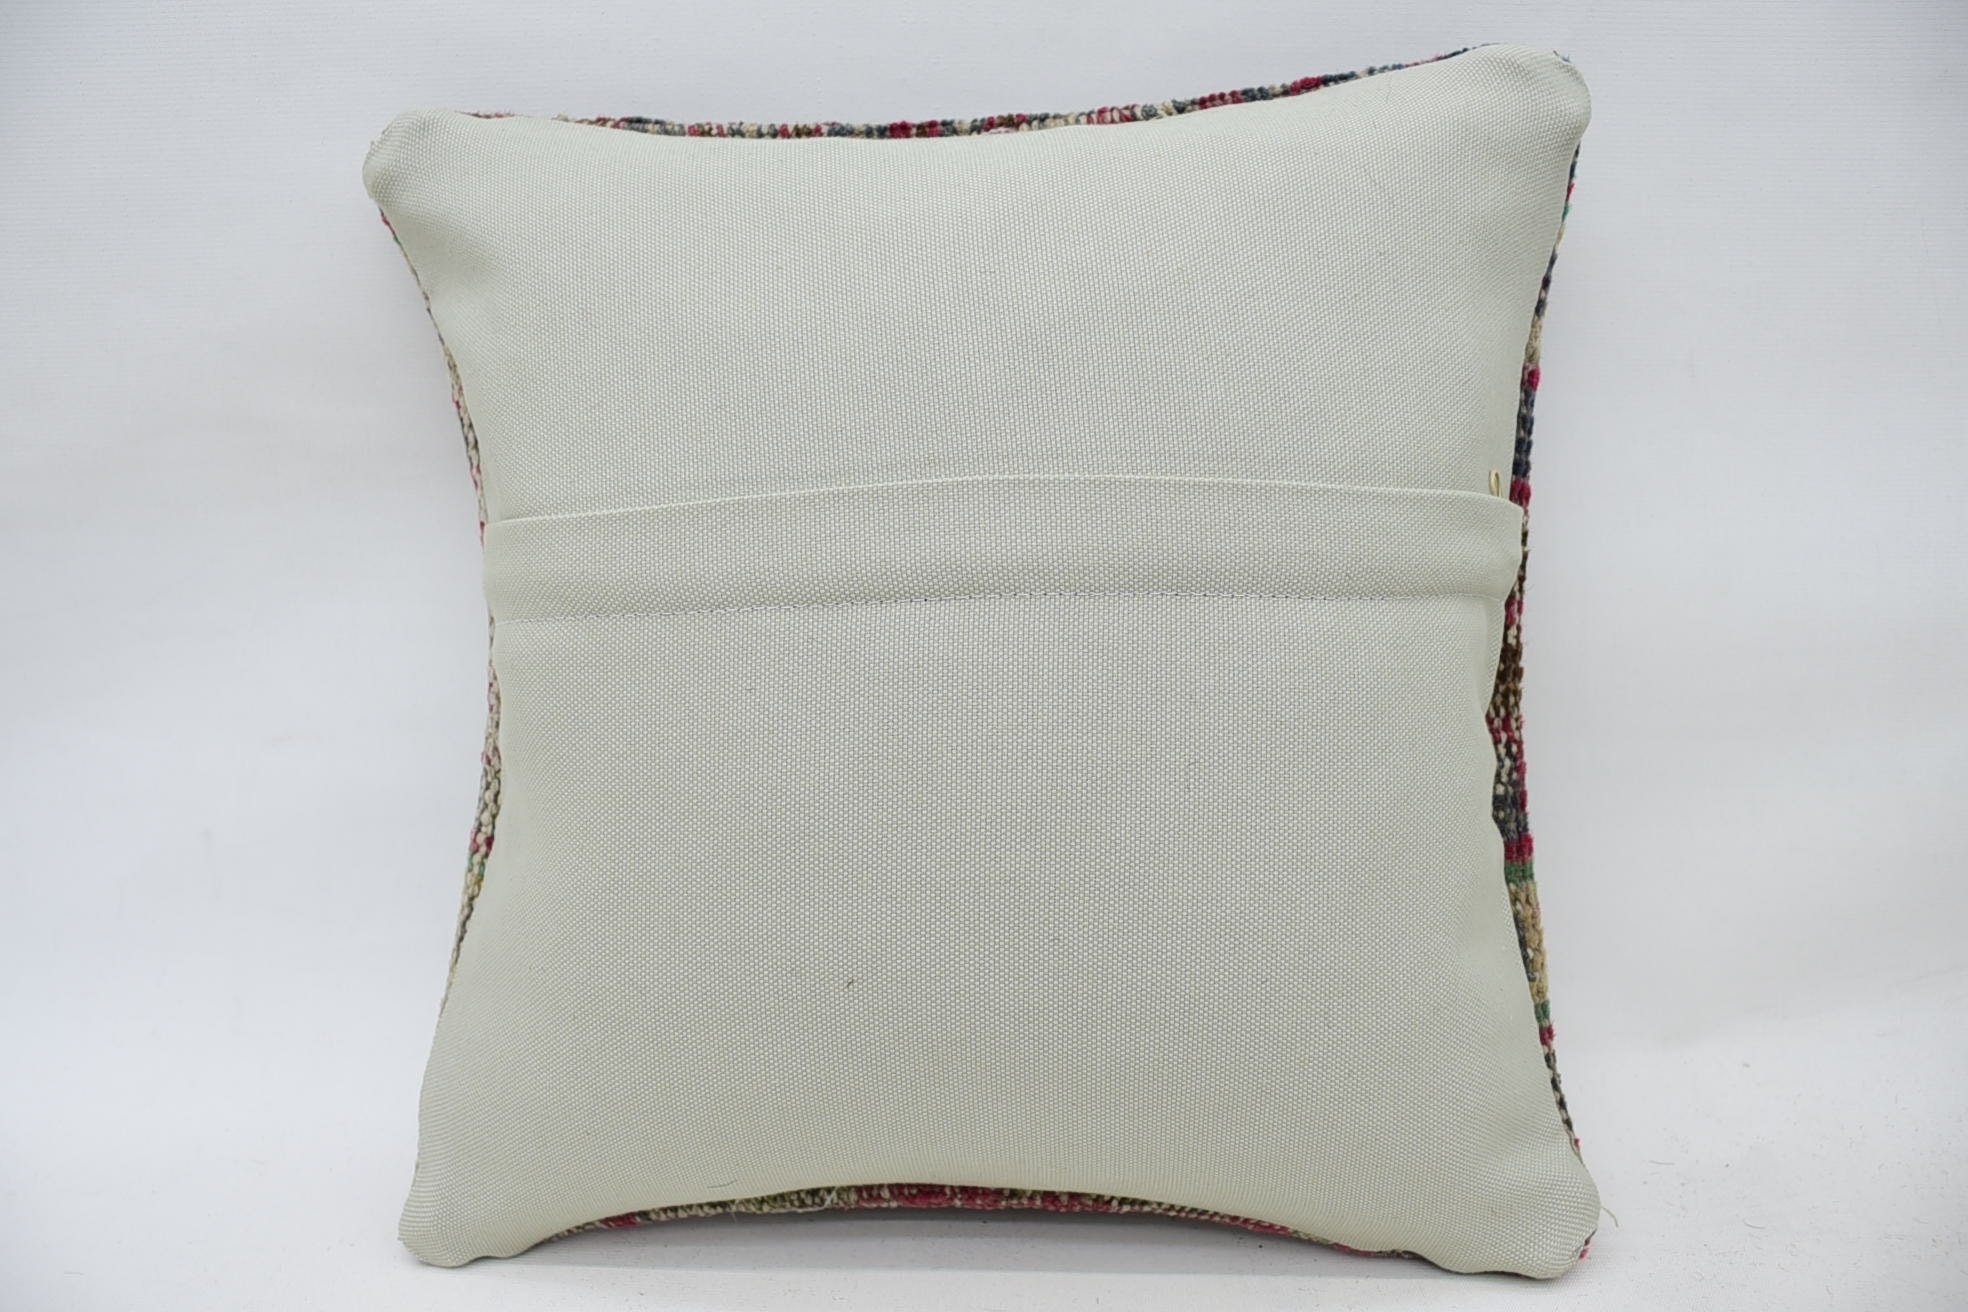 Yoga Pillow Cover, Throw Kilim Pillow, Gift Pillow, 14"x14" Beige Pillow Sham, Turkish Pillow, Crochet Pattern Pillow